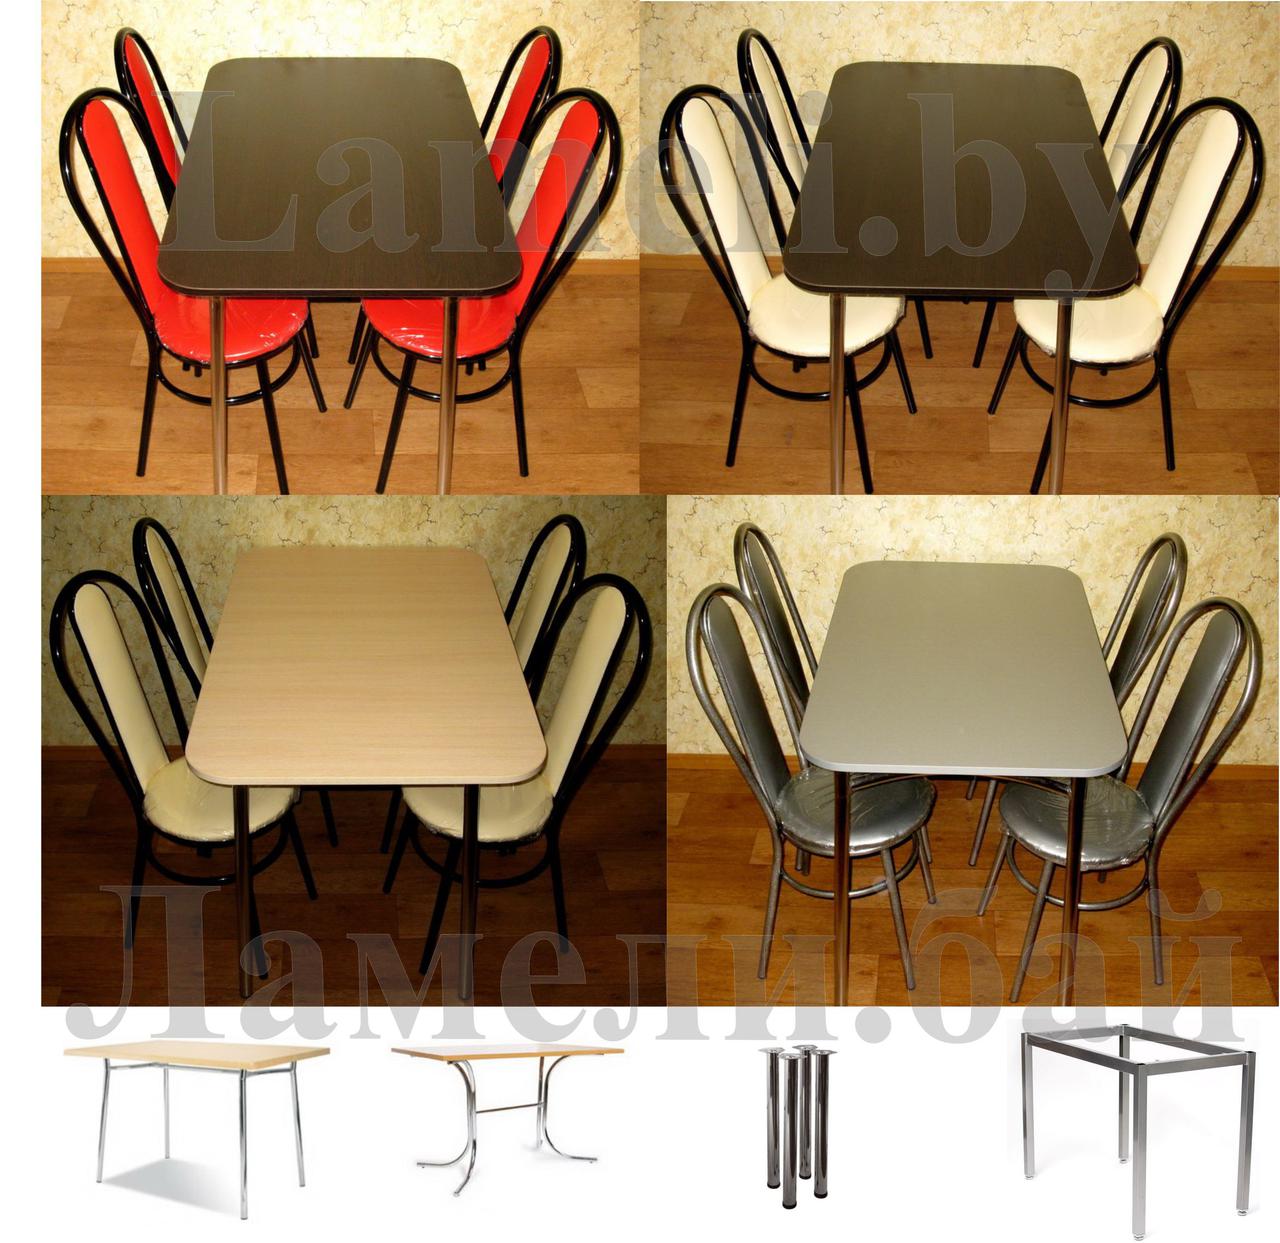 Обеденная группа Идеал. Стол со скосом + 4 стула. Выбор цвета, фото 1